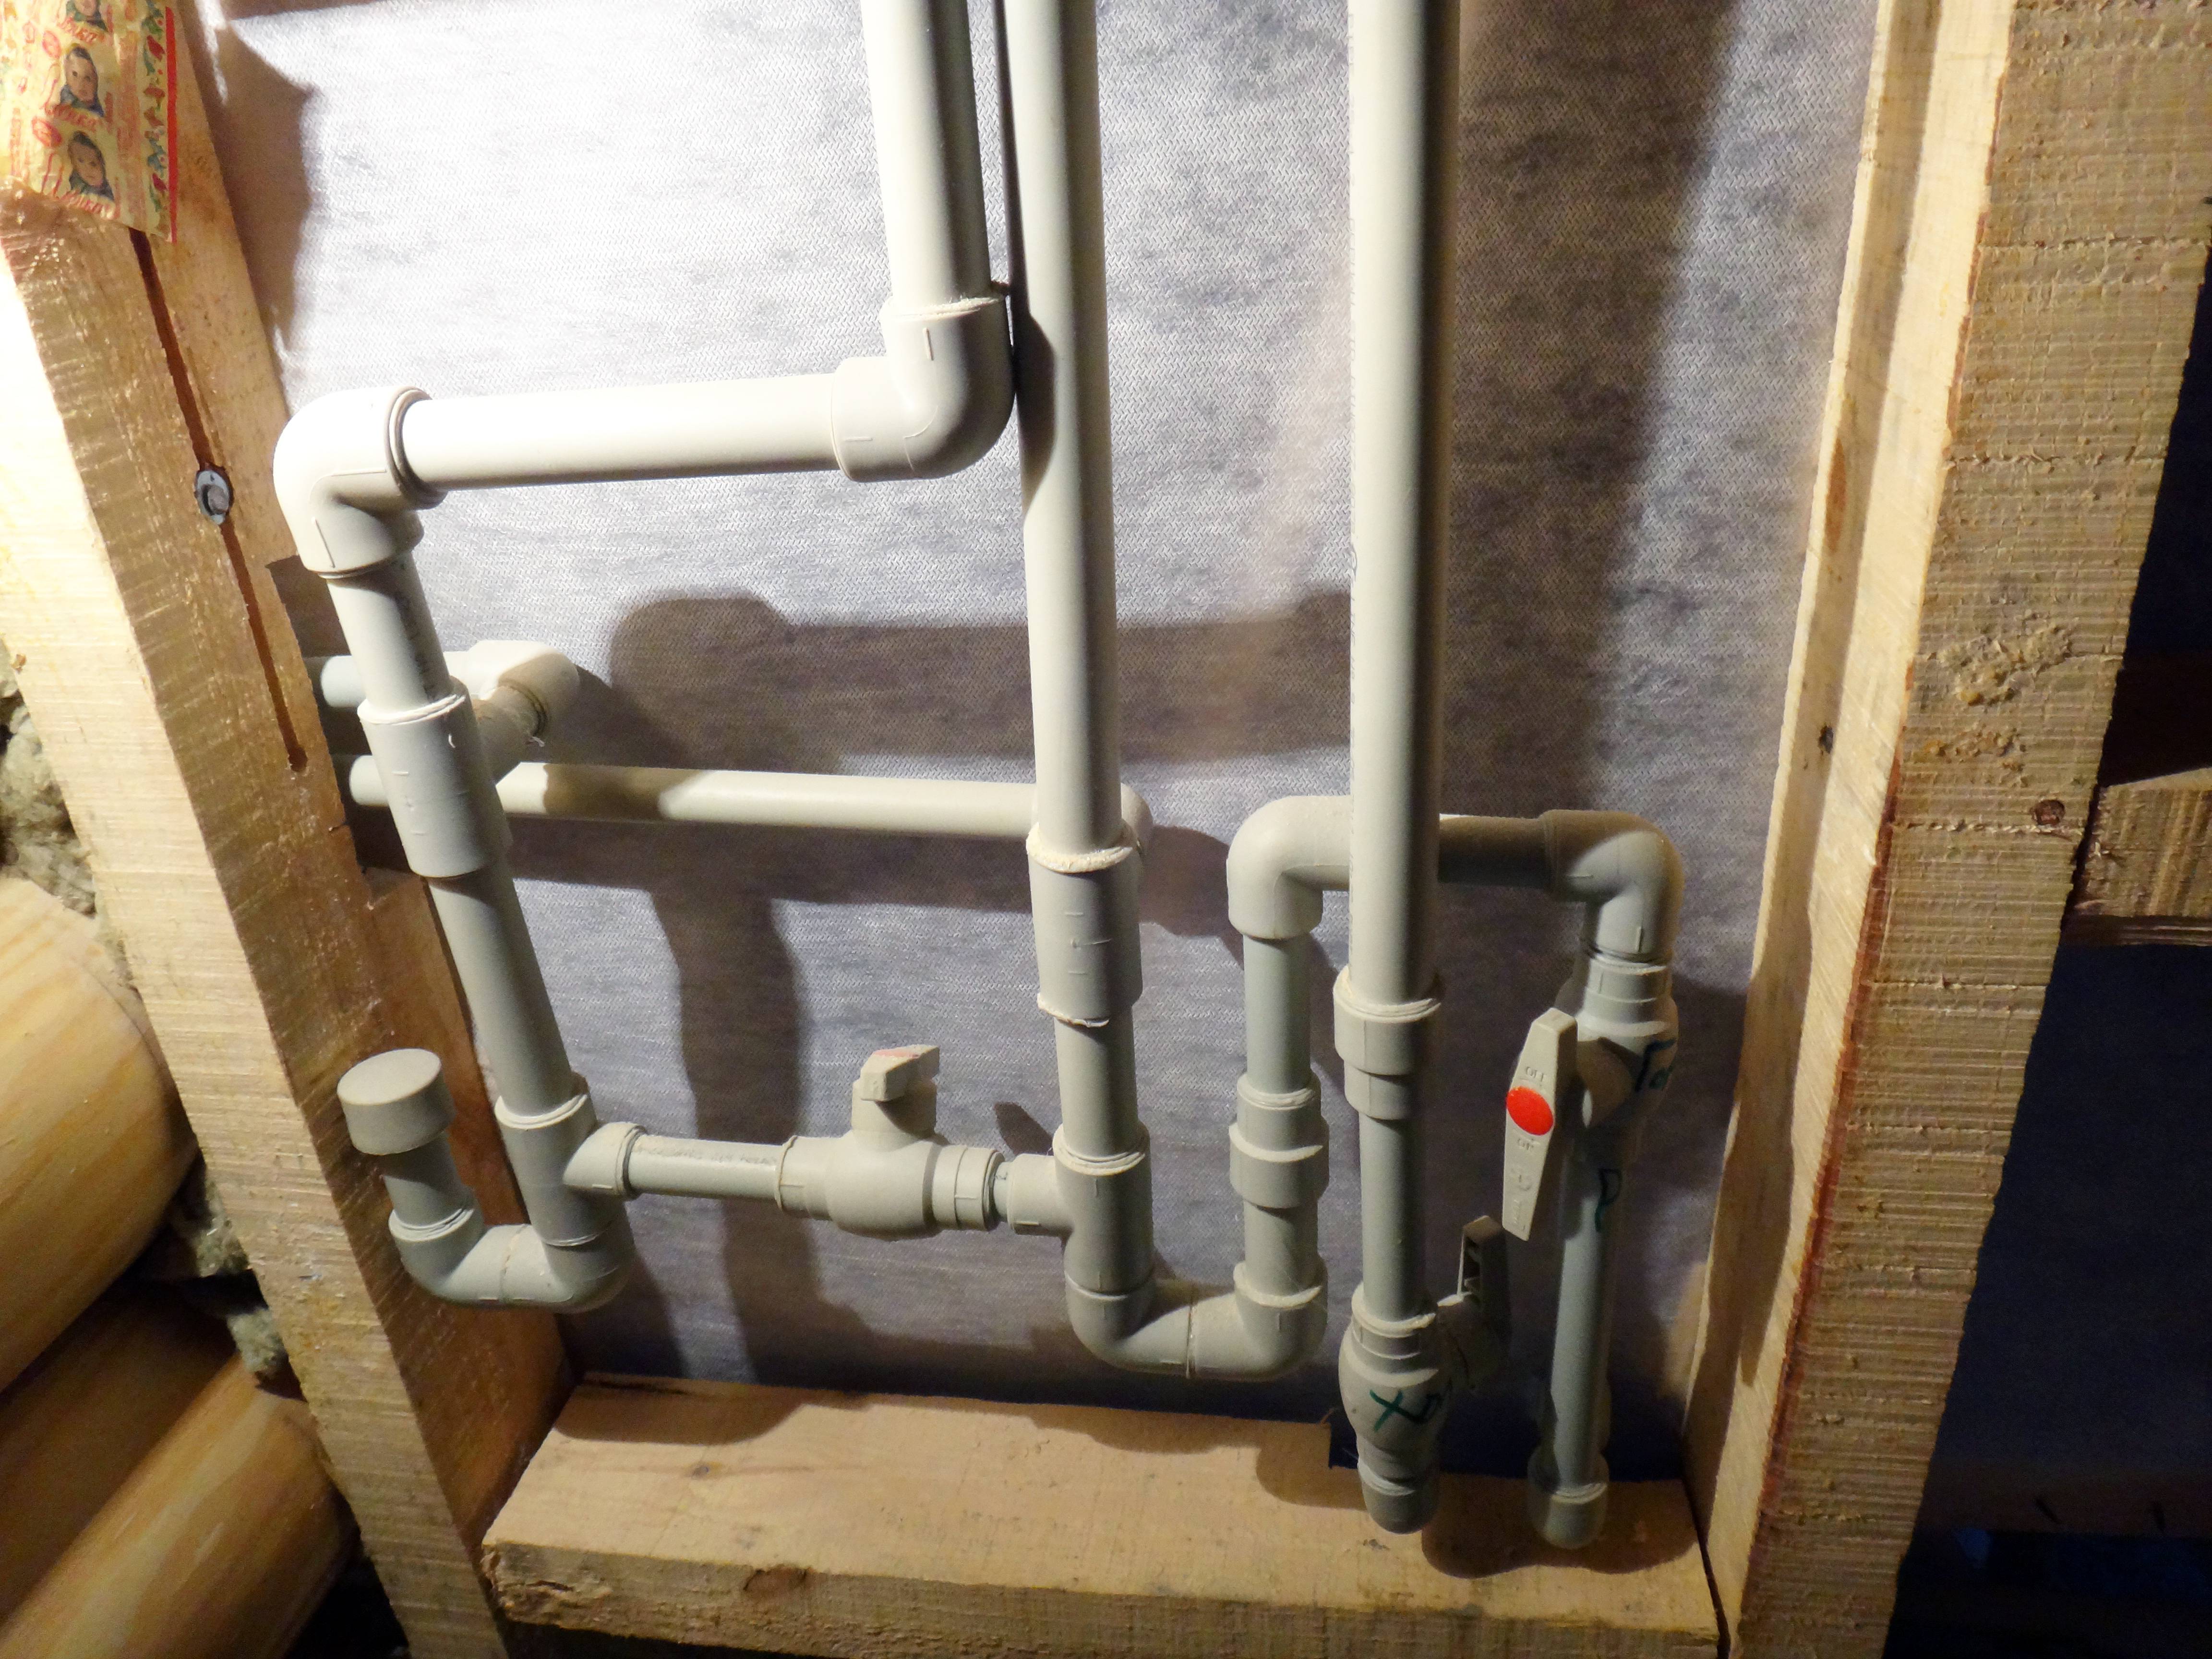 Монтаж водопровода из полипропиленовых труб: прокладка трубопроводов, как монтировать, разводка водоснабжения своими руками, инструкция